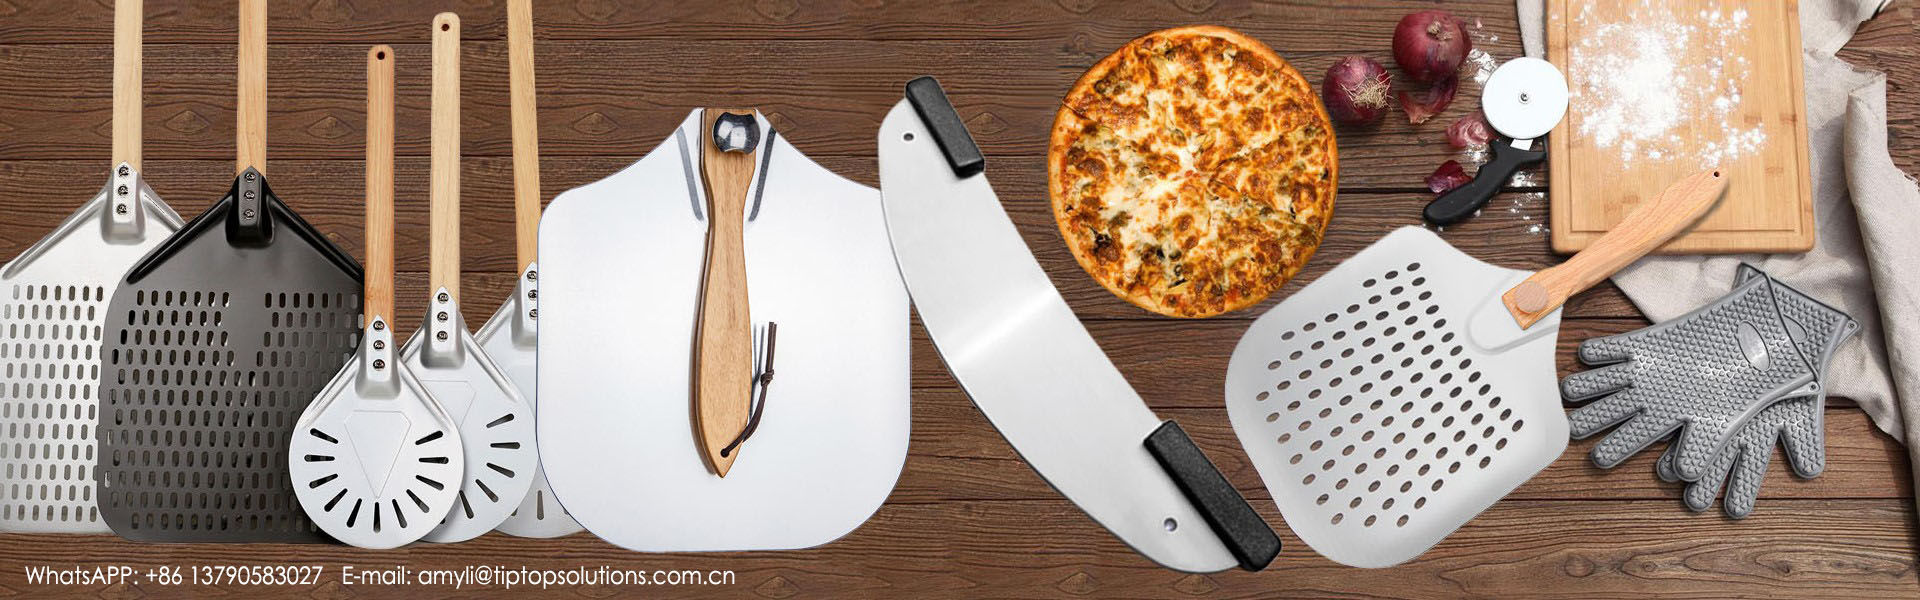 пицца кожура, пицца, инструменты для духовки,TIPTOP SOLUTIONS CO.,LIMITED